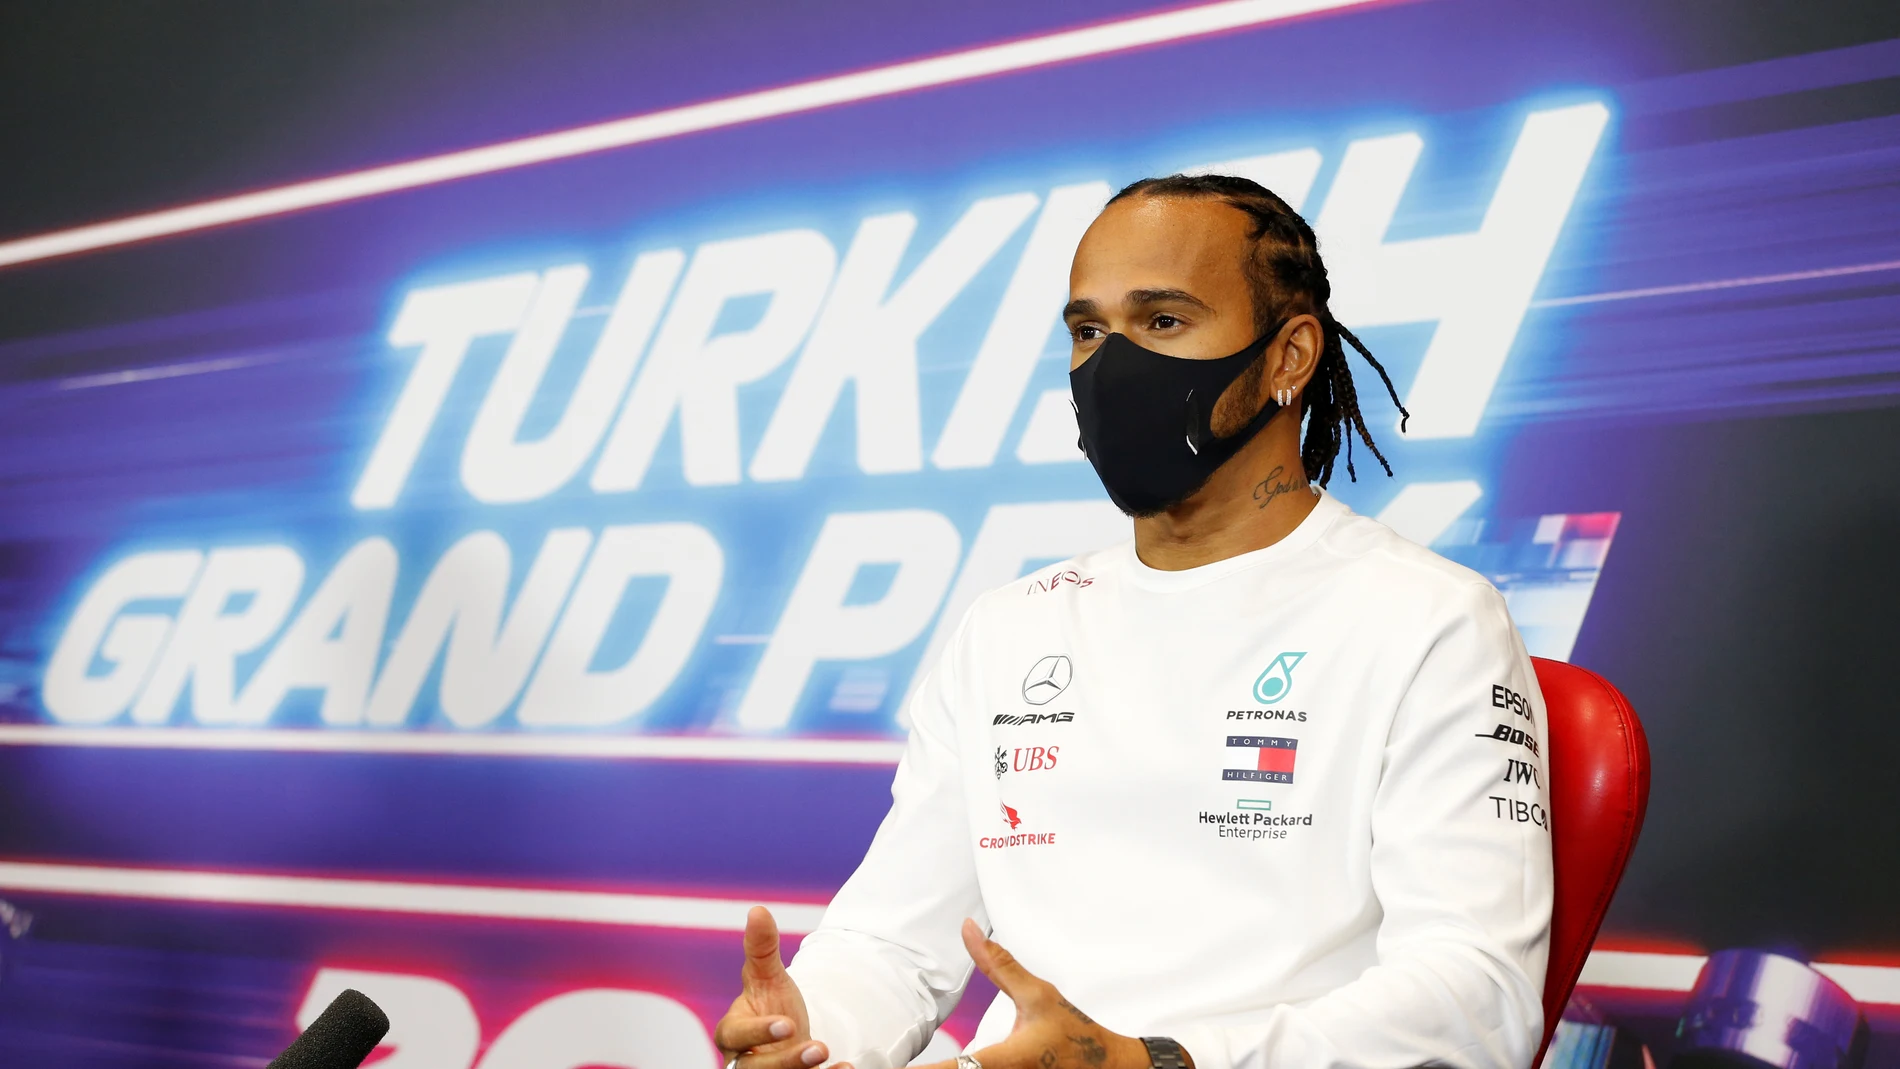 Hamilton en el GP de Turquía